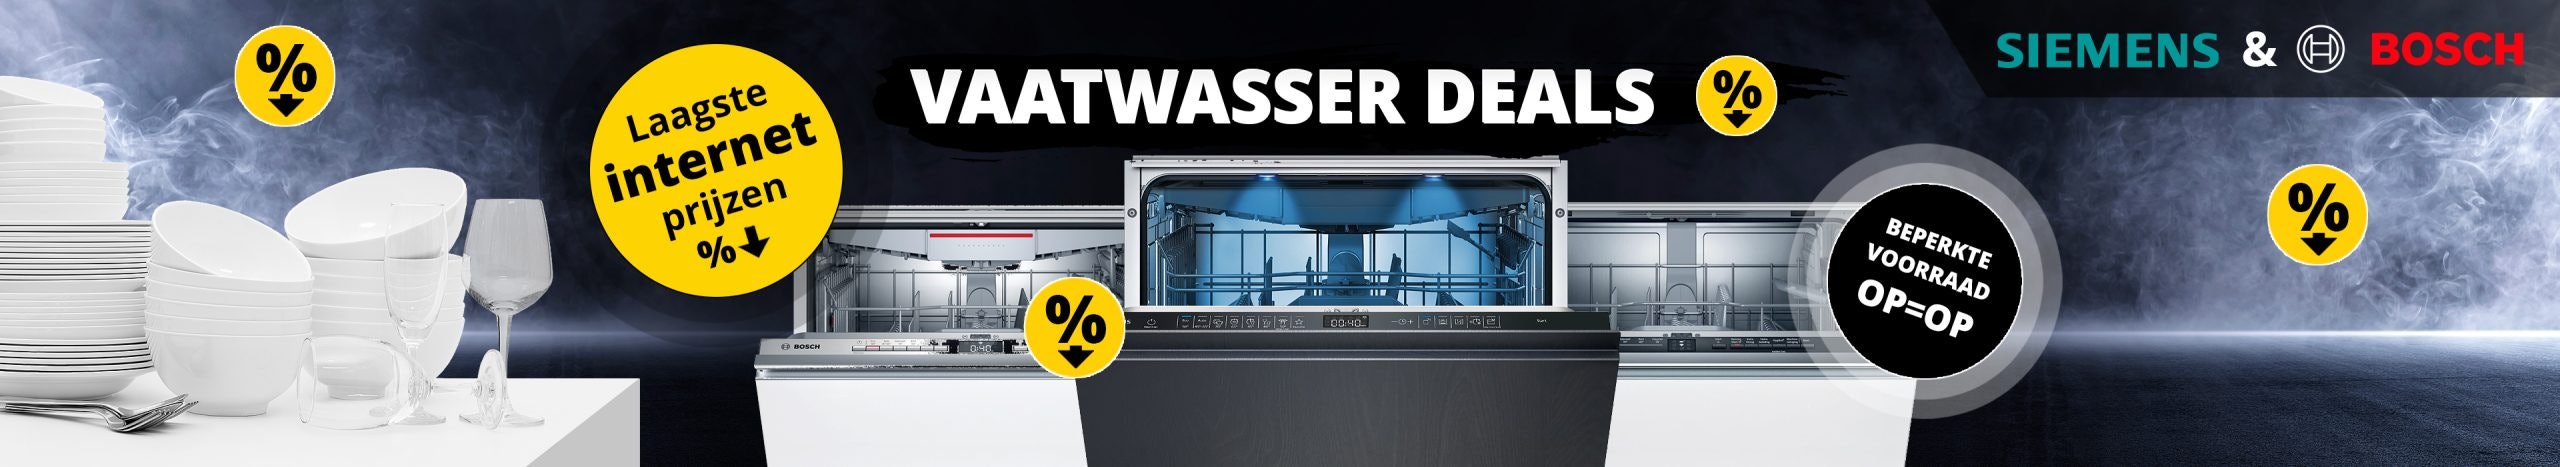 Siemens & Bosch vaatwassers voor de laagste internetprijs!